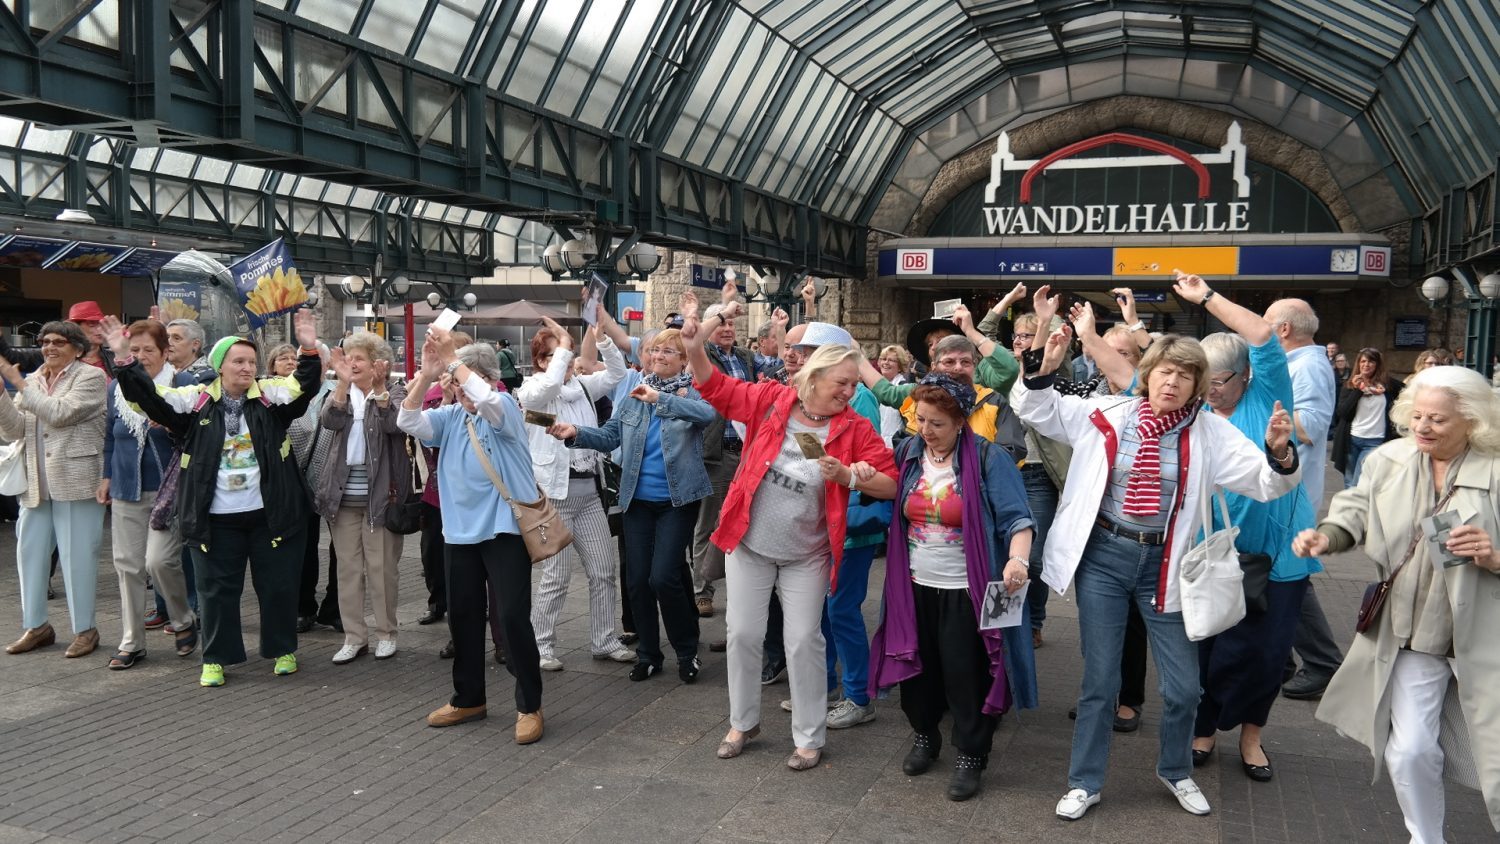 Wie schon hier in Hamburg, wird morgen auch der erste Senioren-Flashmob in Düsseldorf stattfinden. Bildquelle: wegeausdereinsamkeit.de